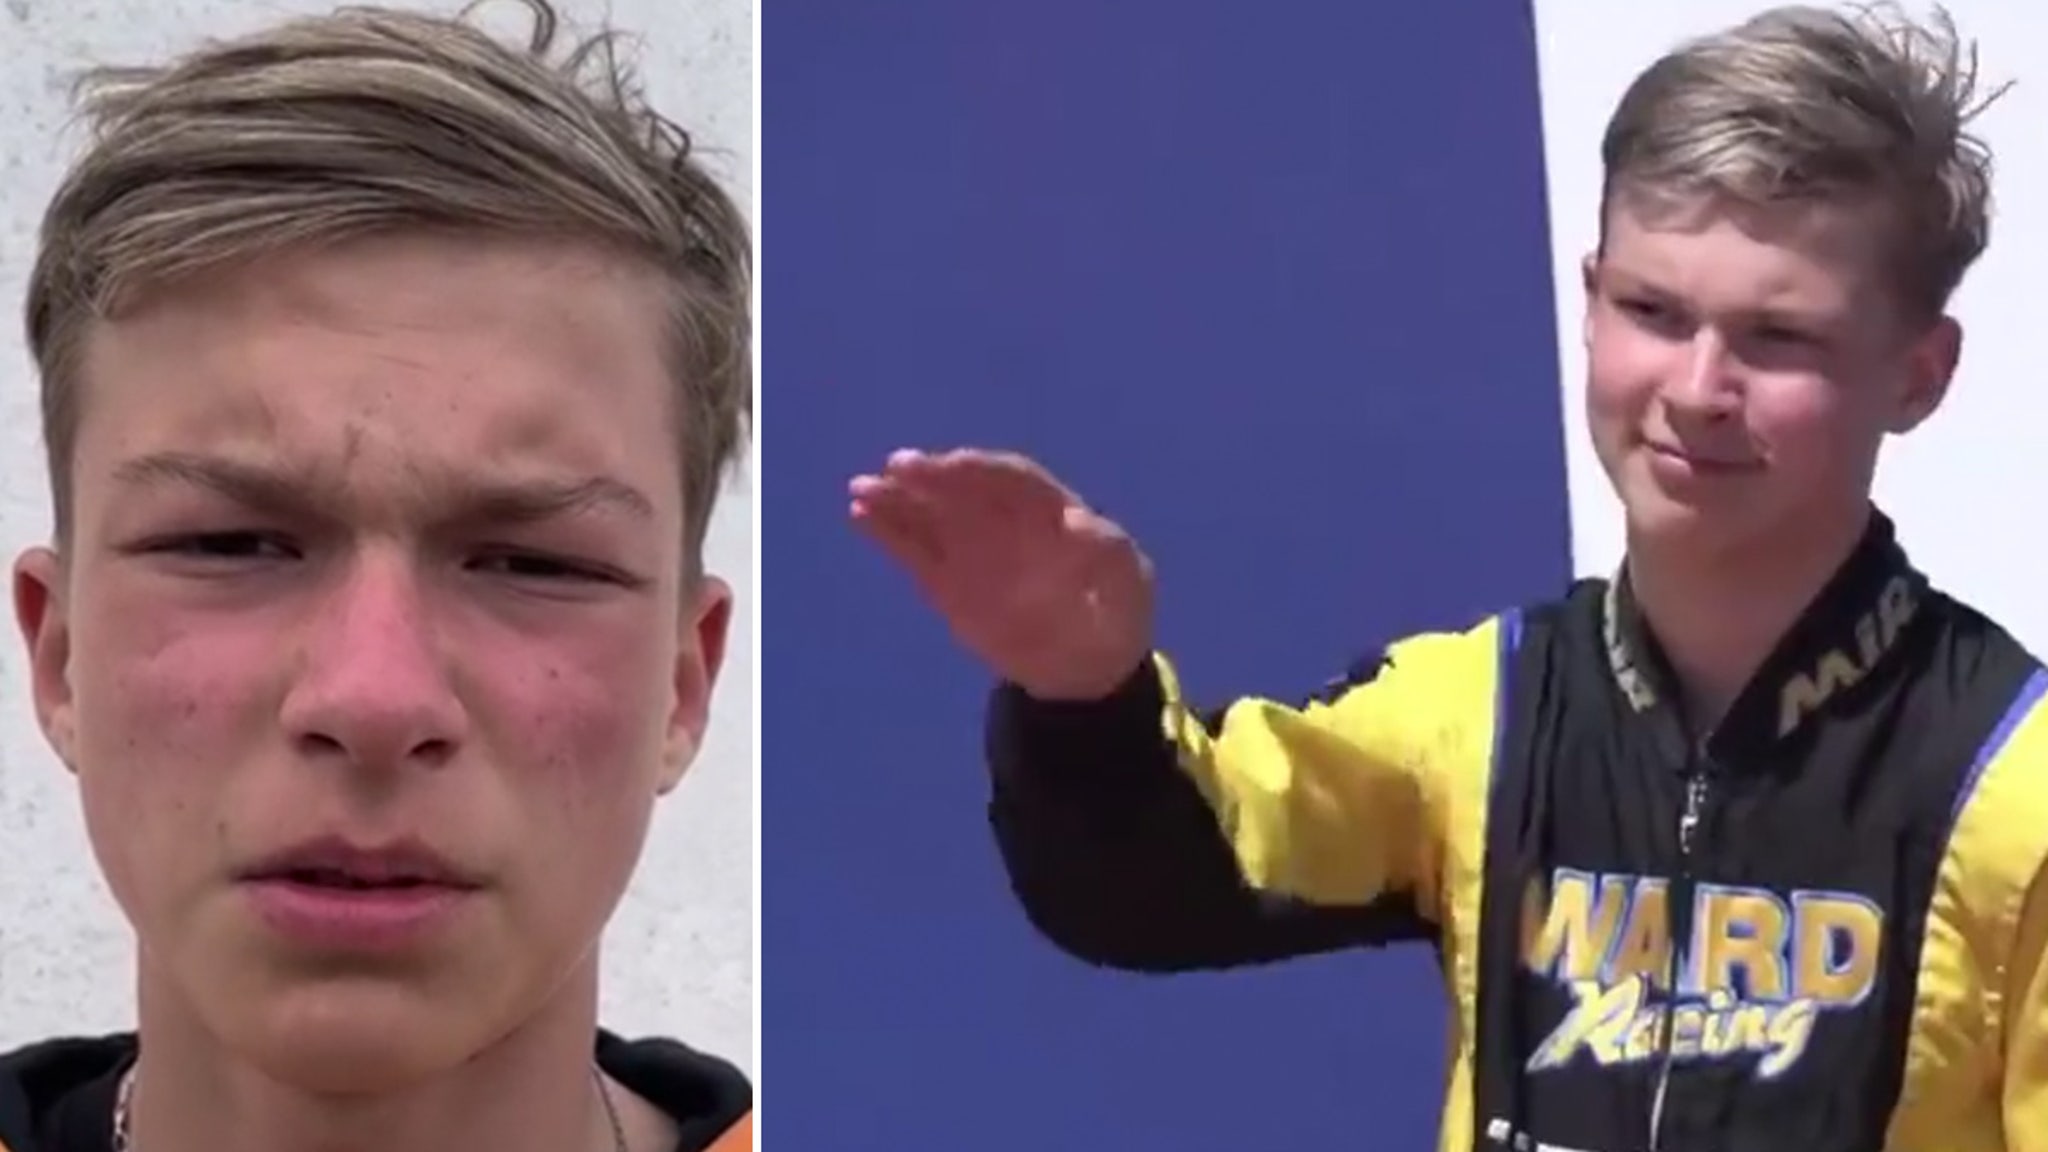 El gesto del podio no es un saludo nazi, dice el héroe ruso del karting Perdón por la confusión